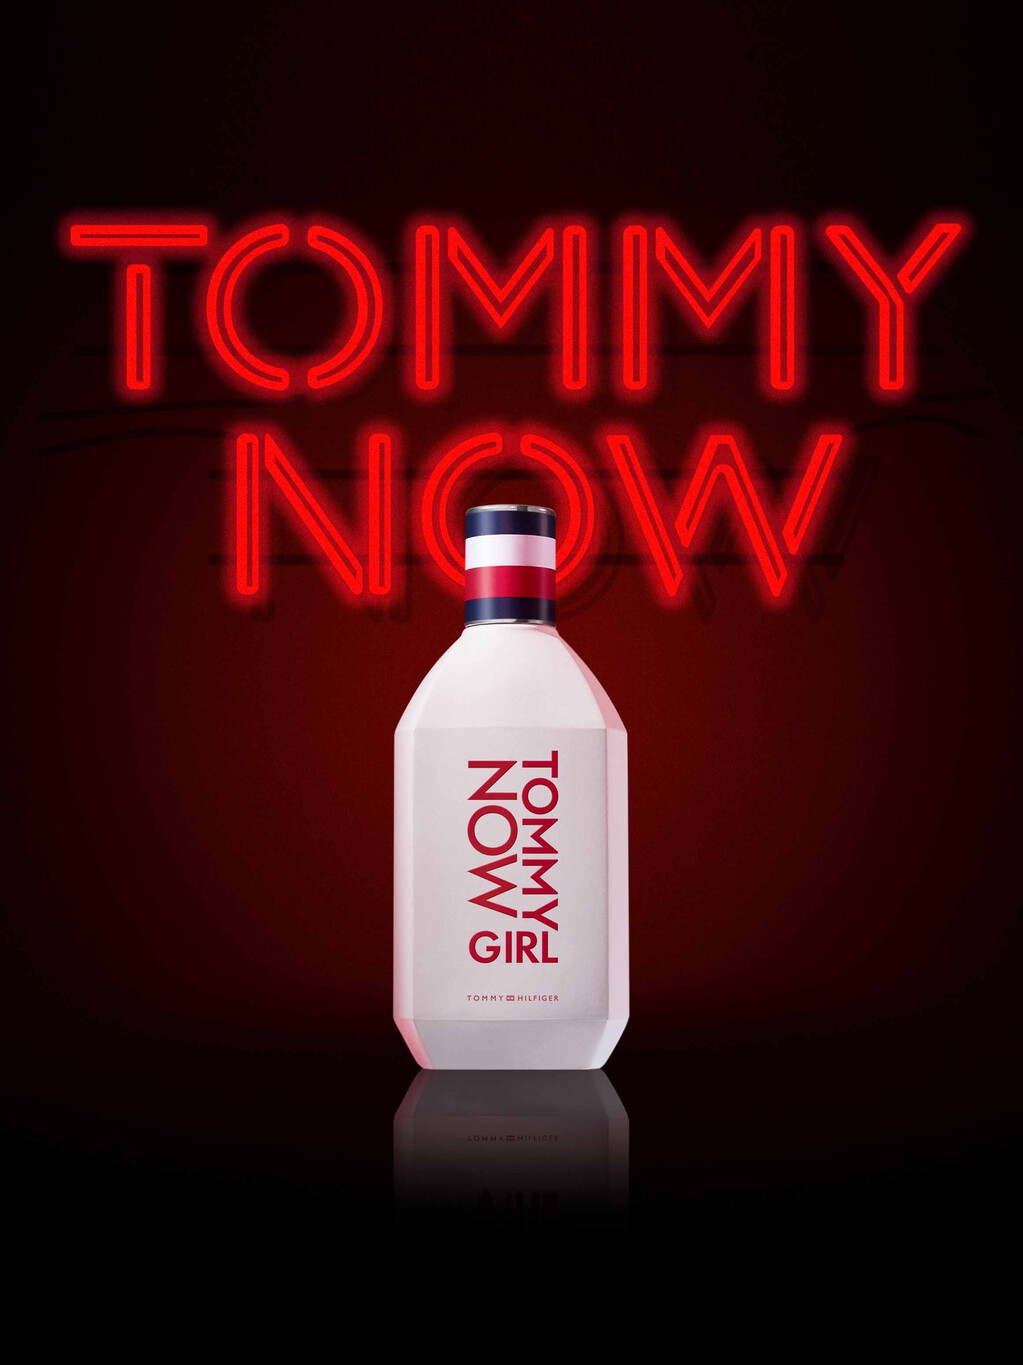 Tommy Now Girl Eau De Toilette 100ML